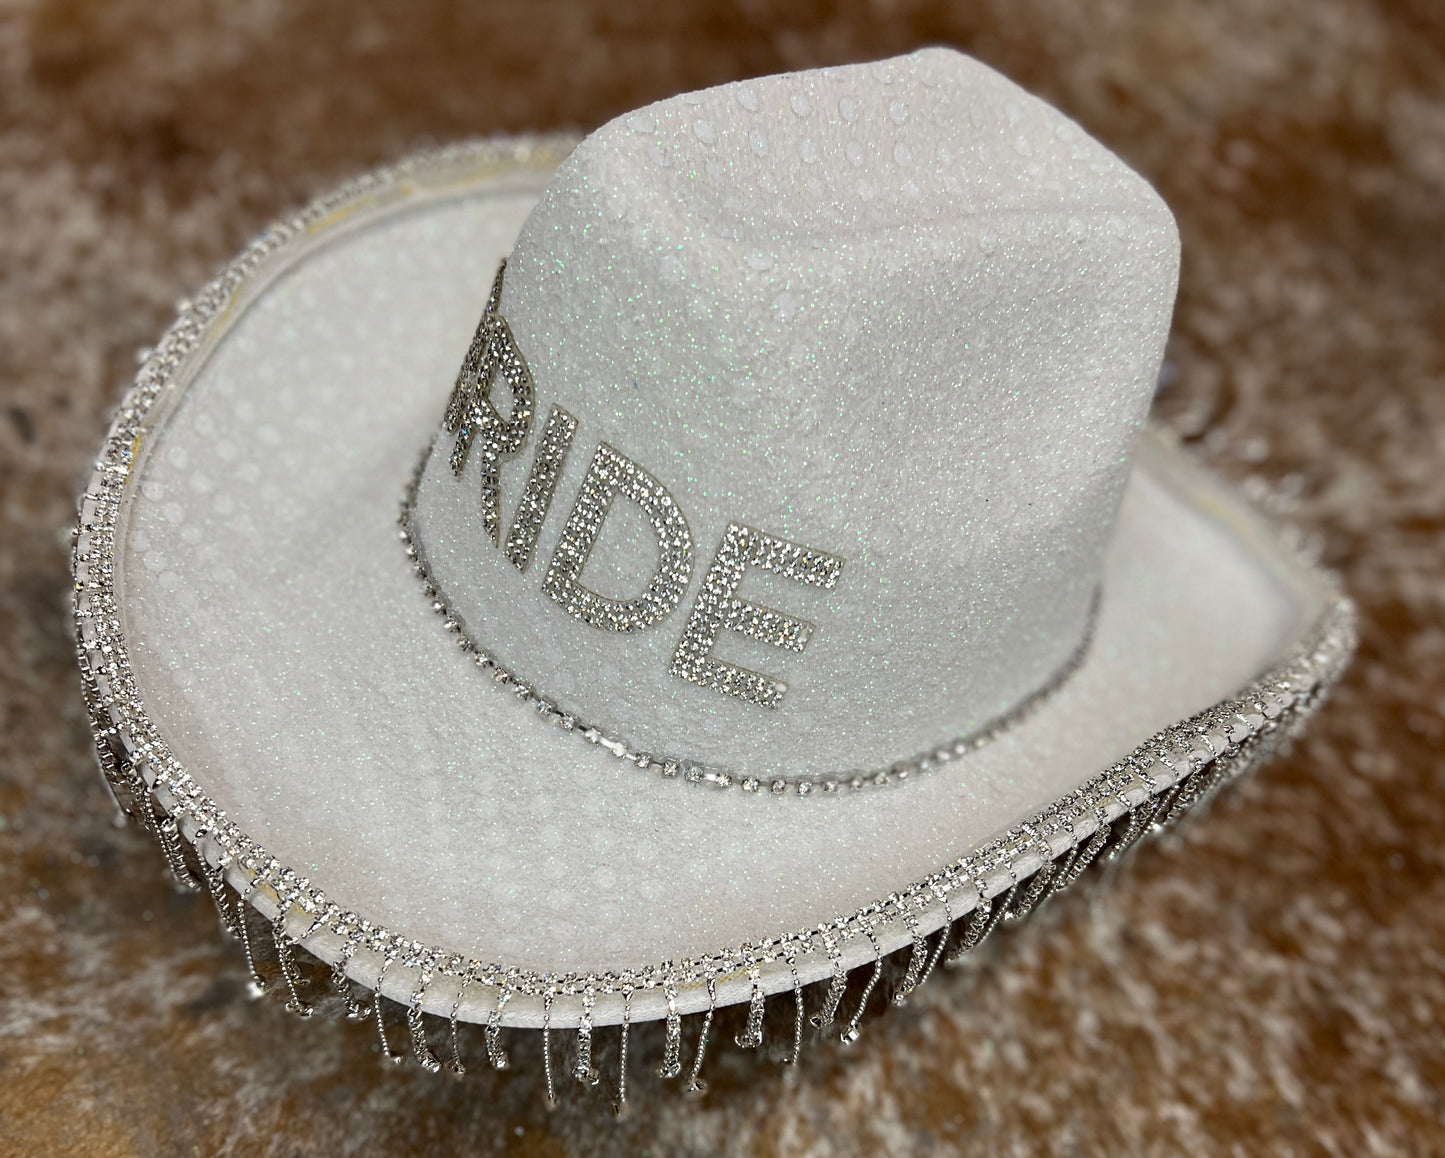 White Bride Glitter Cowboy Hat